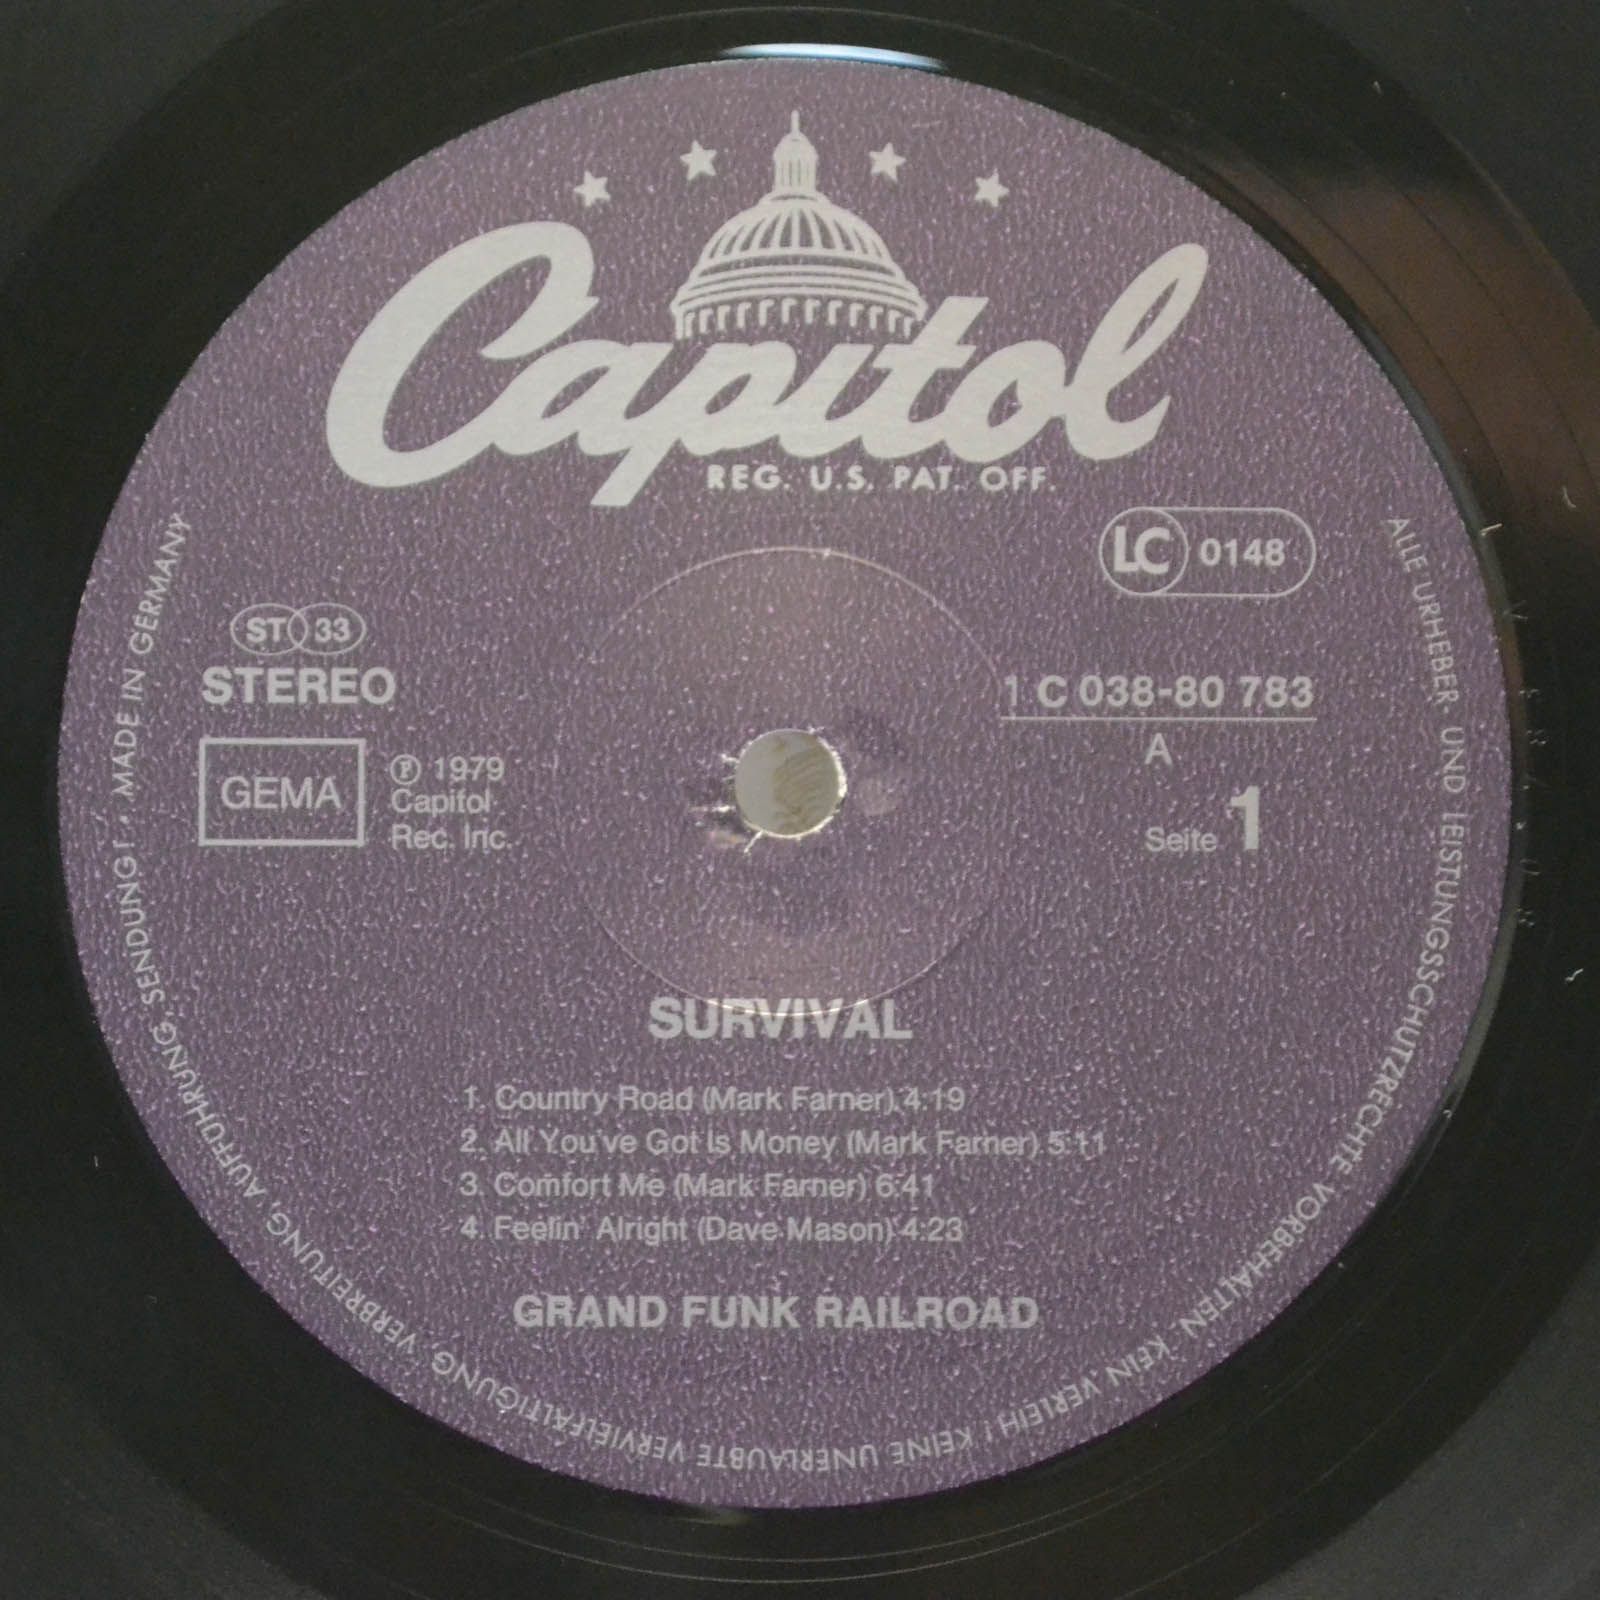 Grand Funk Railroad — Survival, 1971